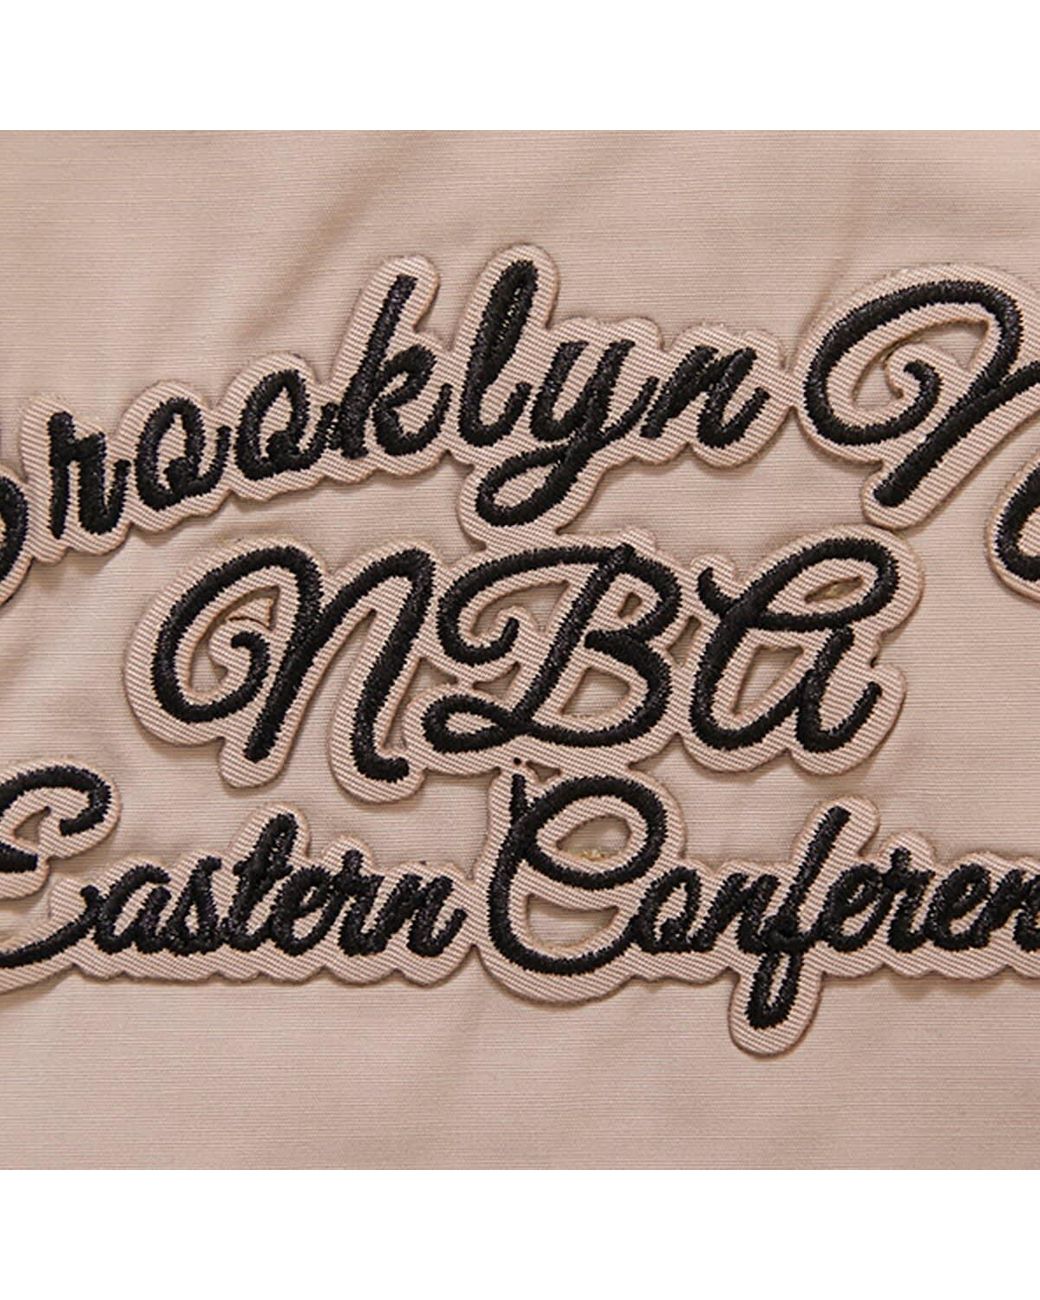 Pro Standard Brooklyn Nets Hybrid Full-zip Hoodie At Nordstrom in